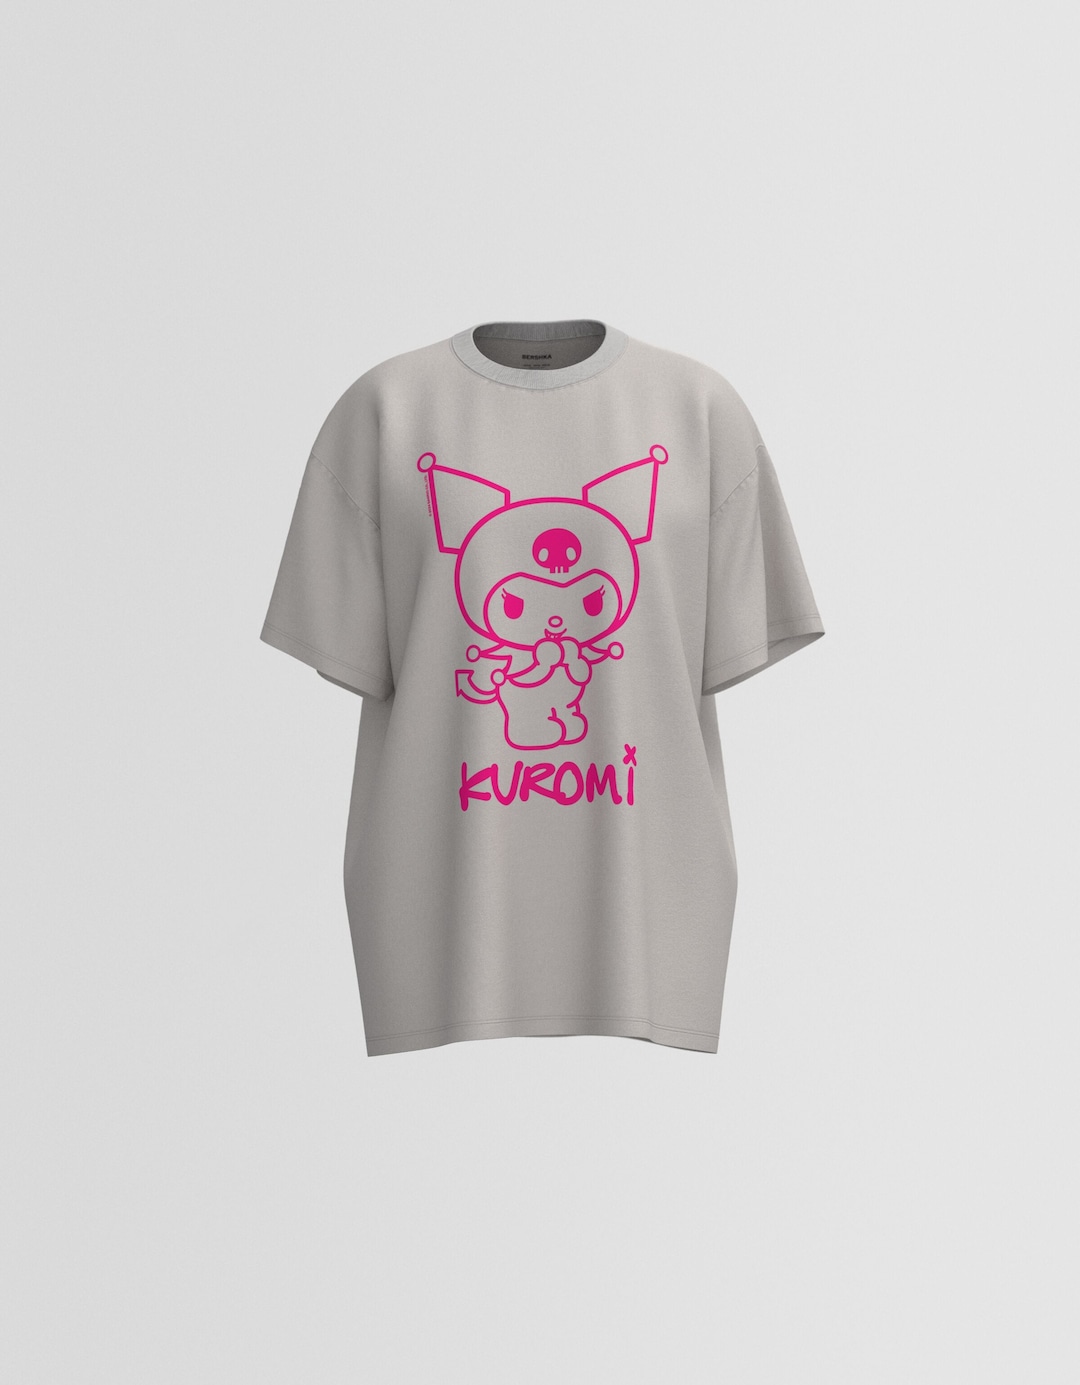 Kortärmad t-shirt med fyrkantig passform och Kuromi-tryck